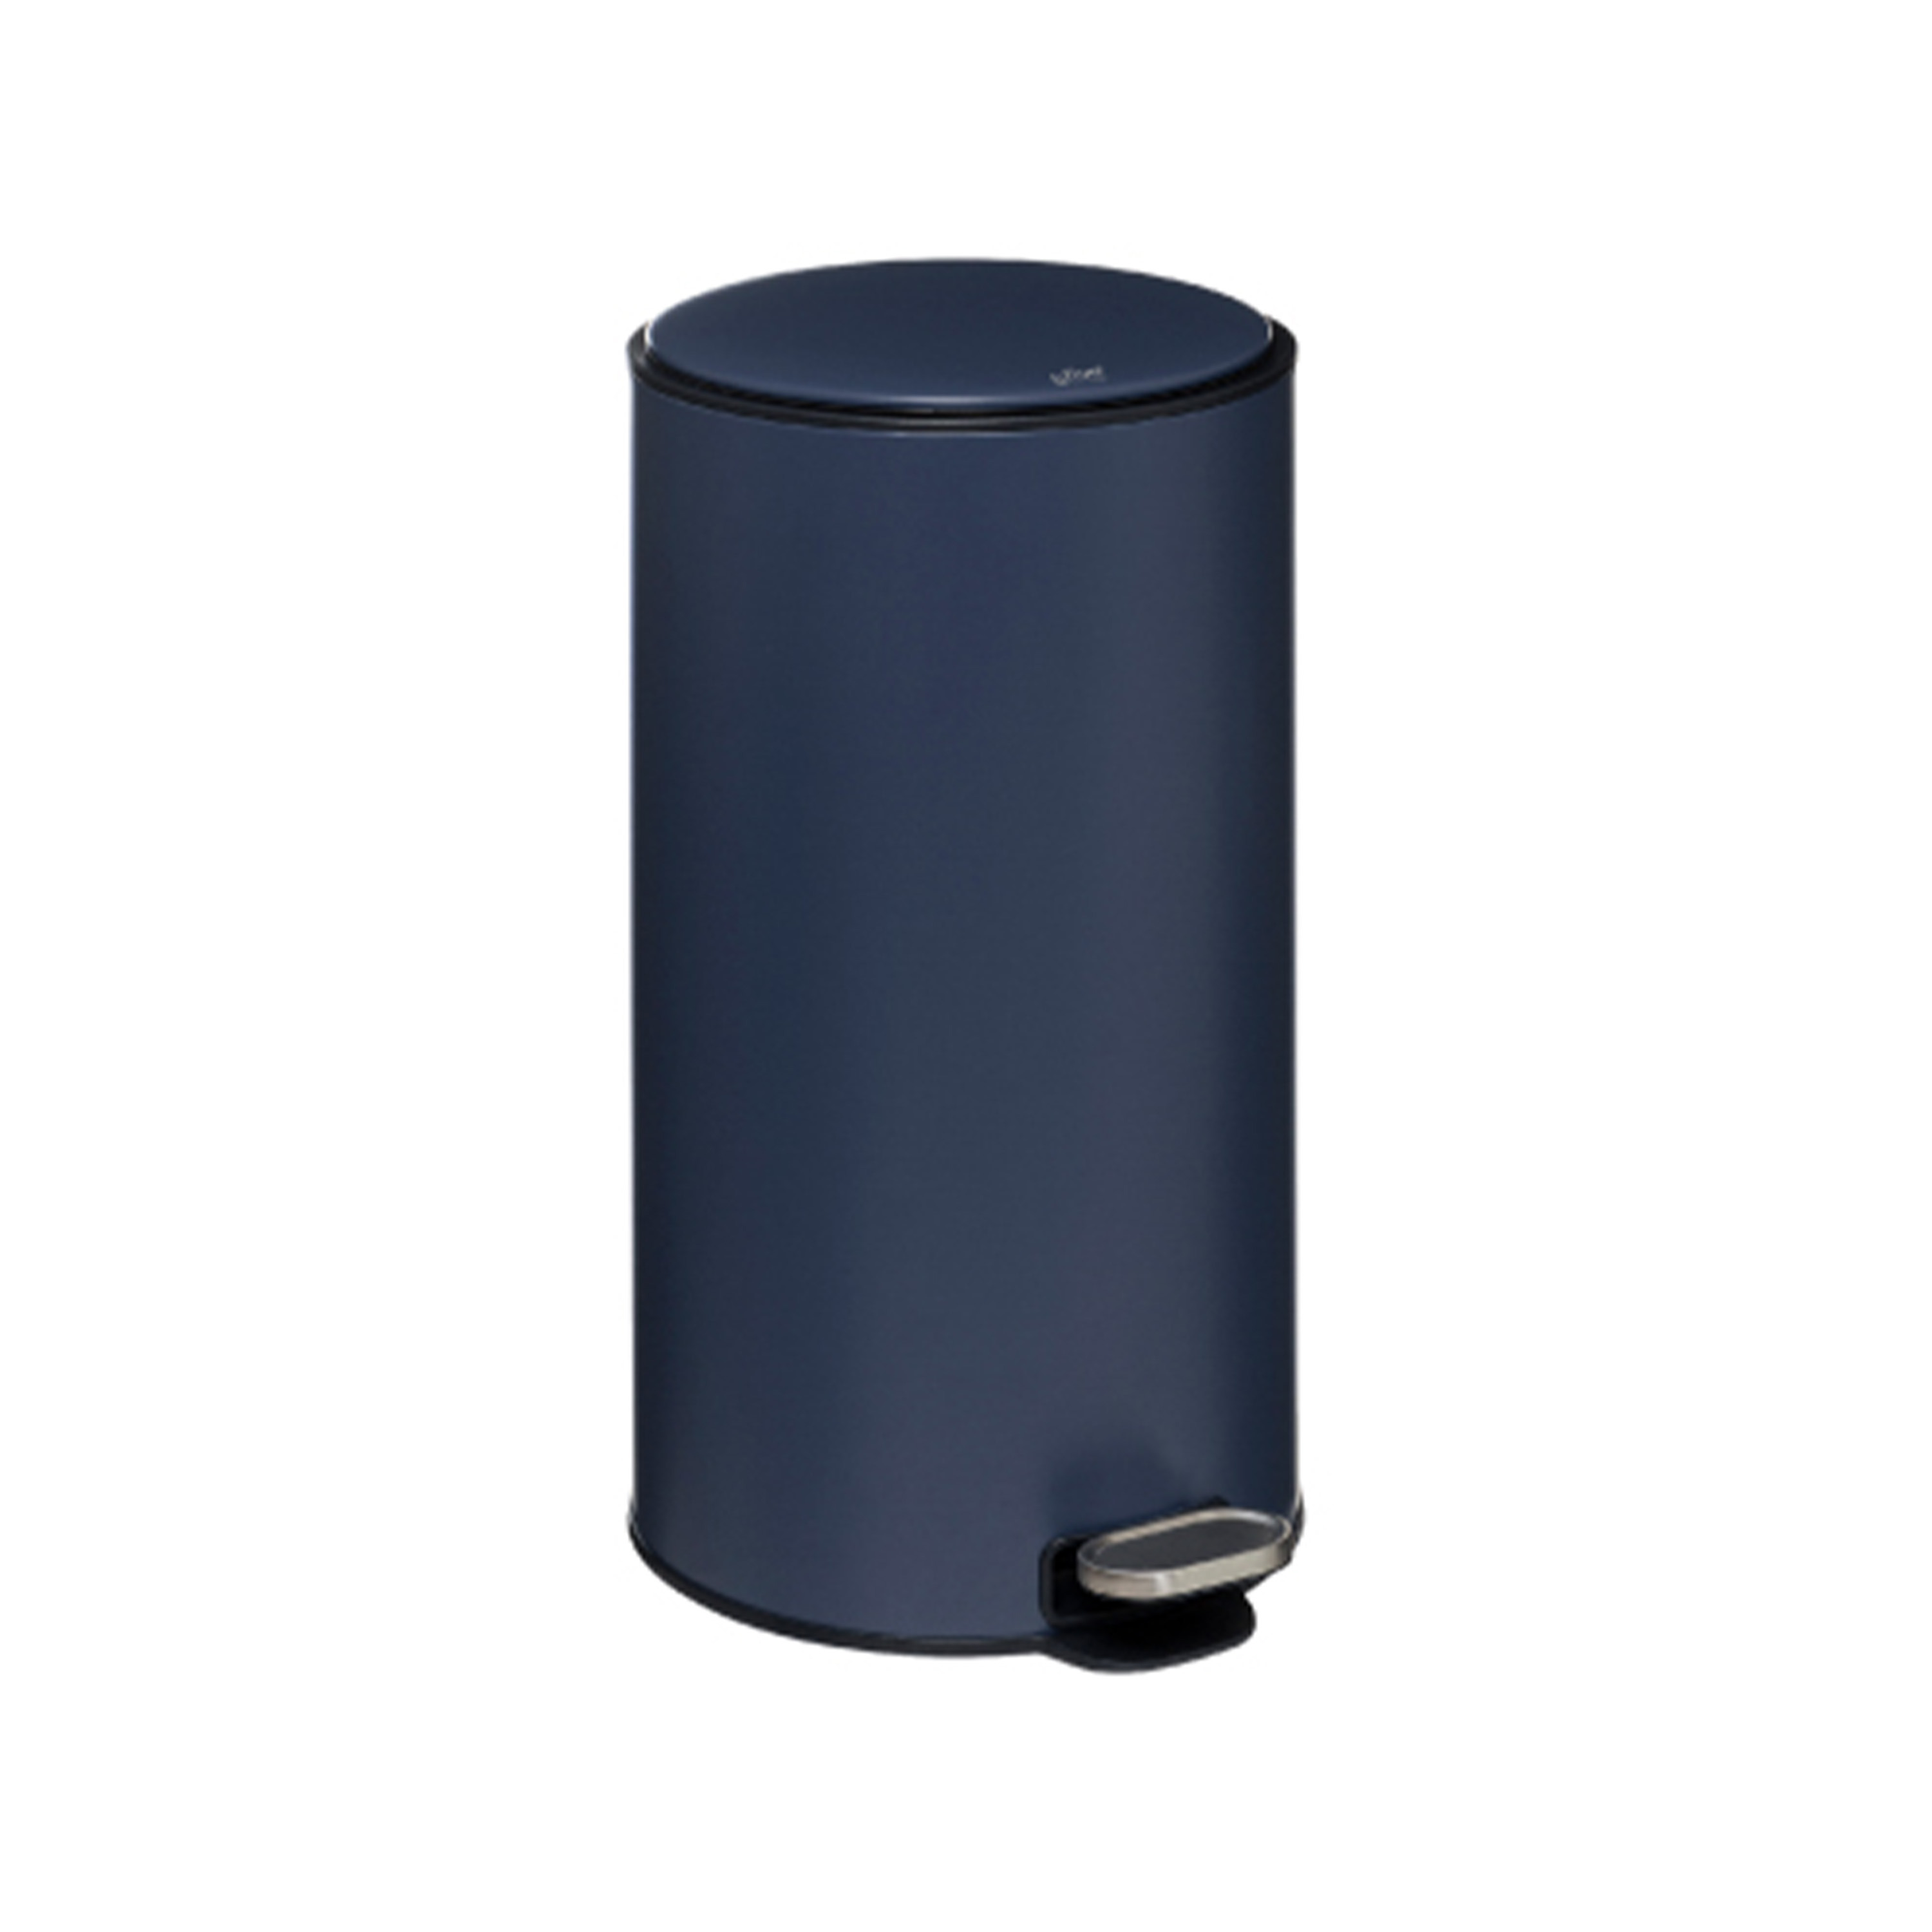 Prullenbak-pedaalemmer donkerblauw metaal 30 liter 39 x 33 x 62 cm keuken